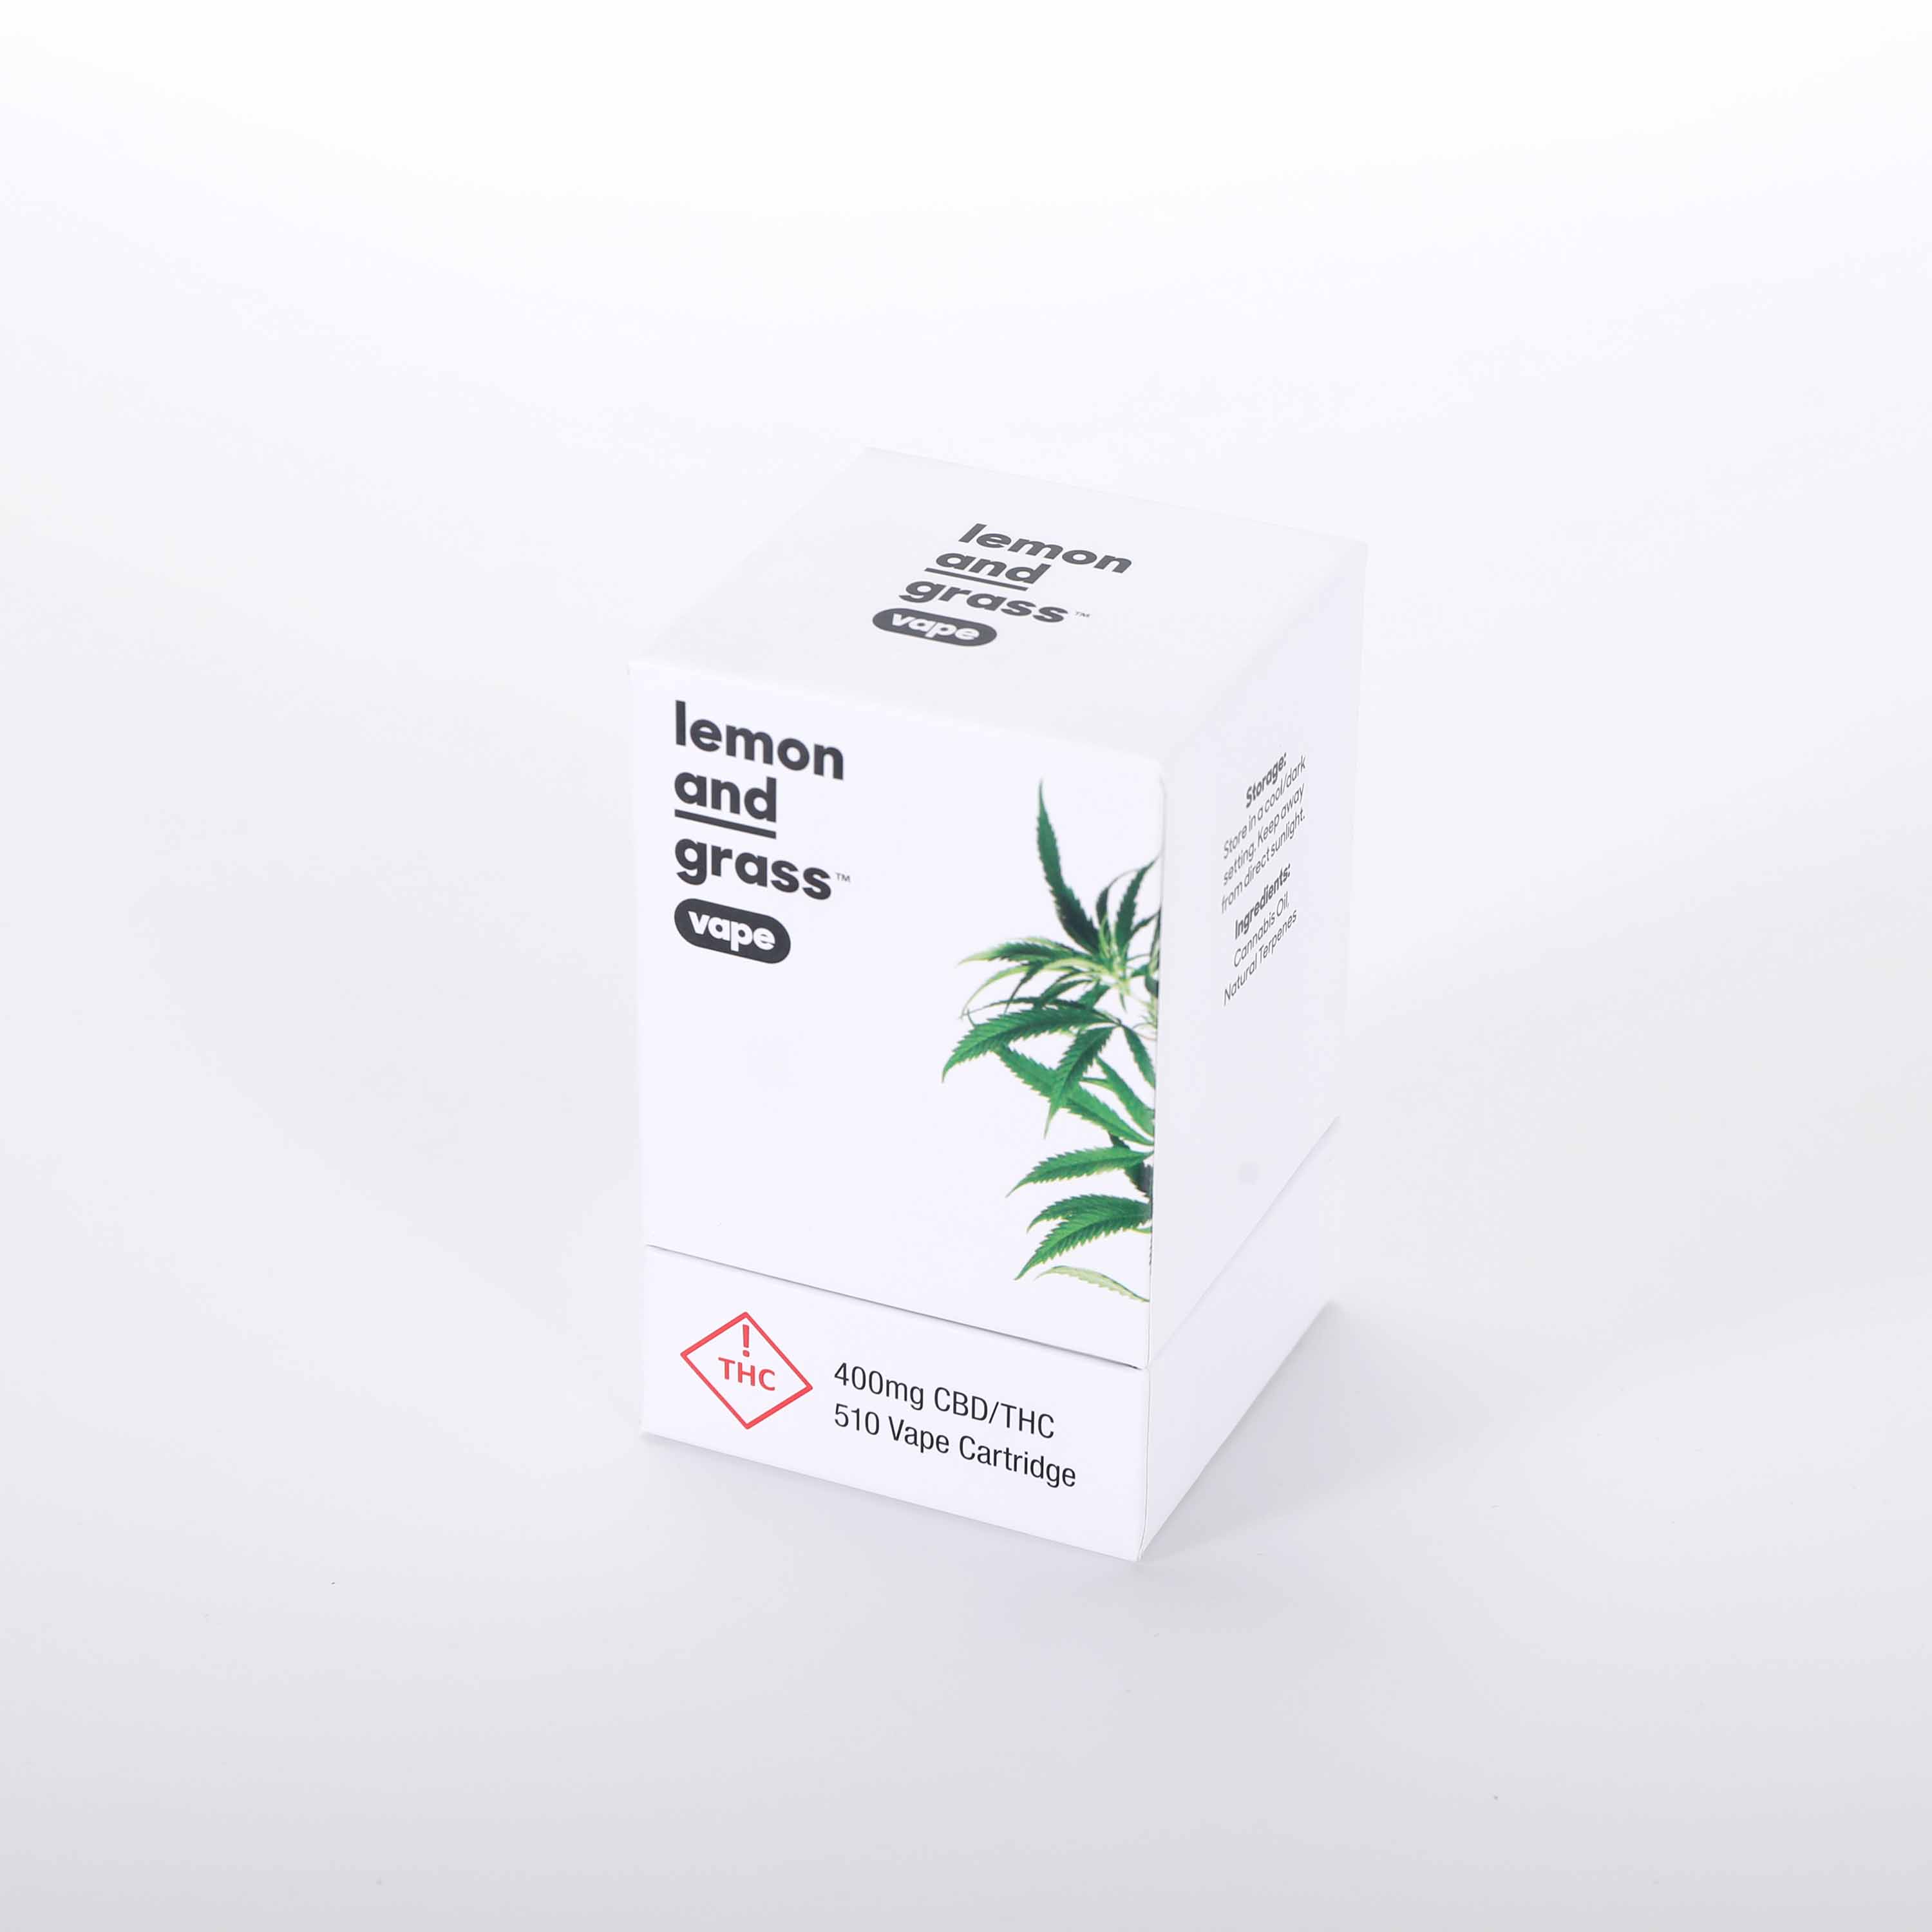 Cannabis box